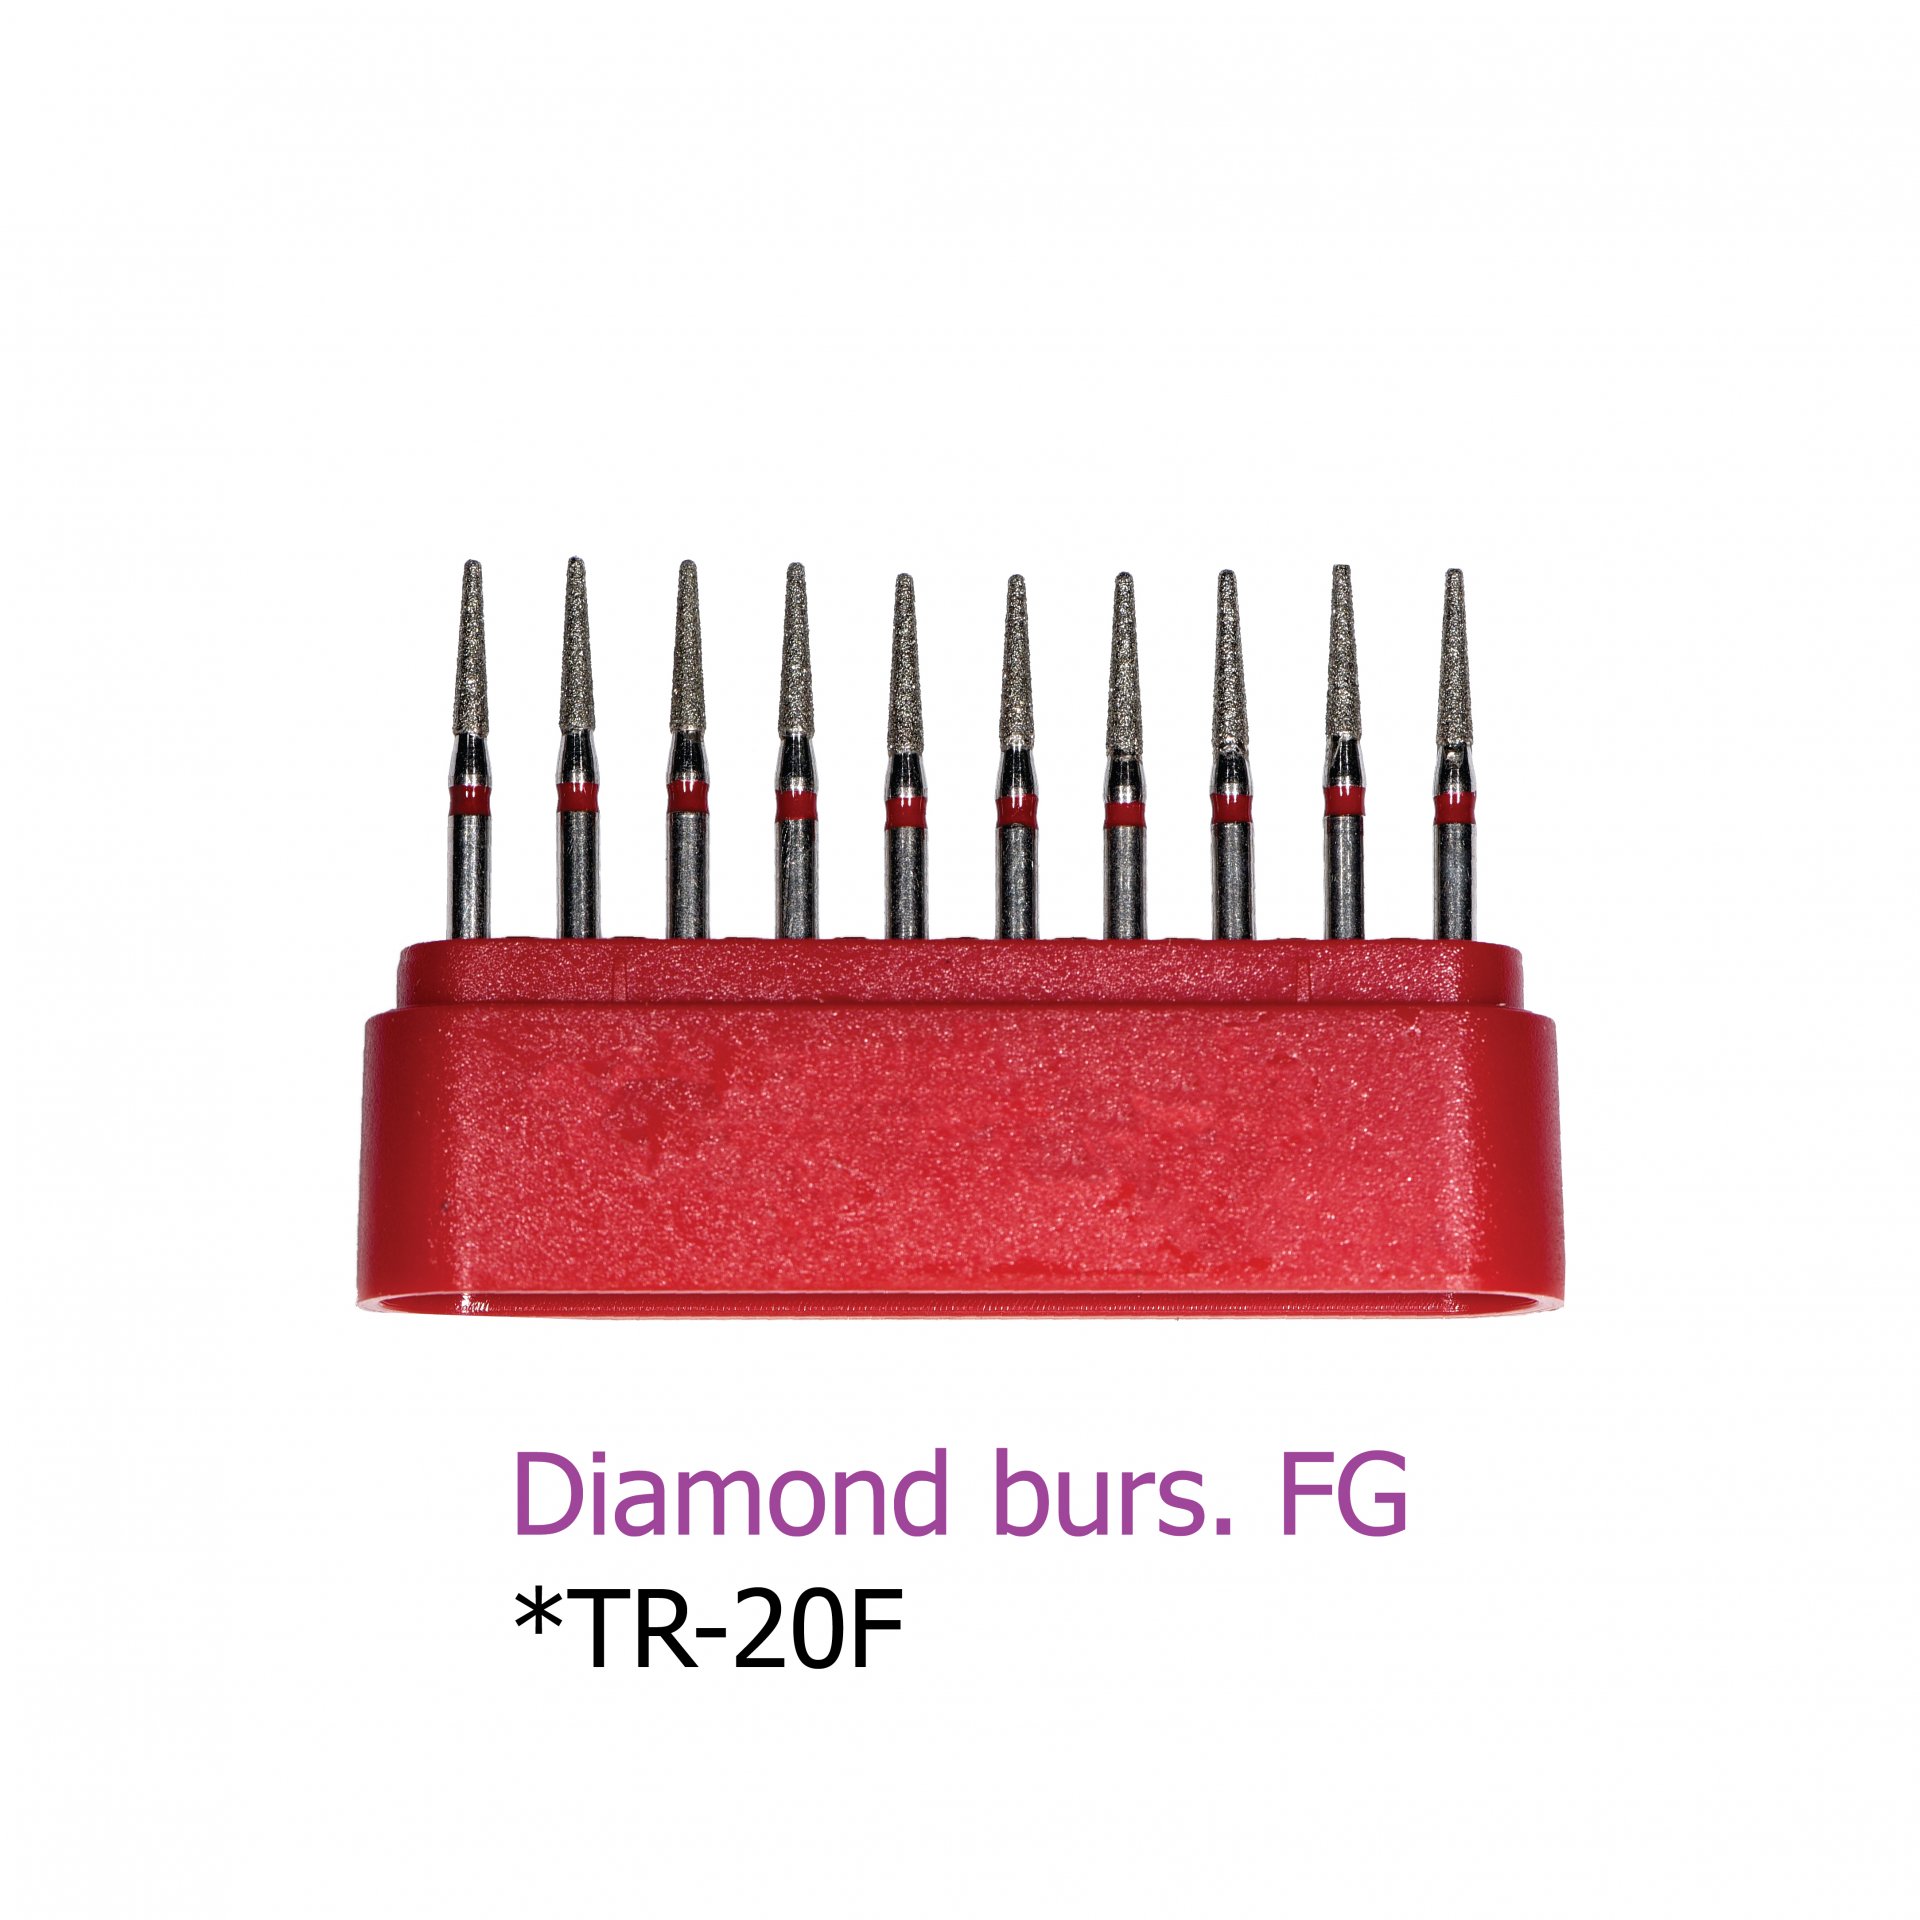 Diamond burs. FG *TR-20F